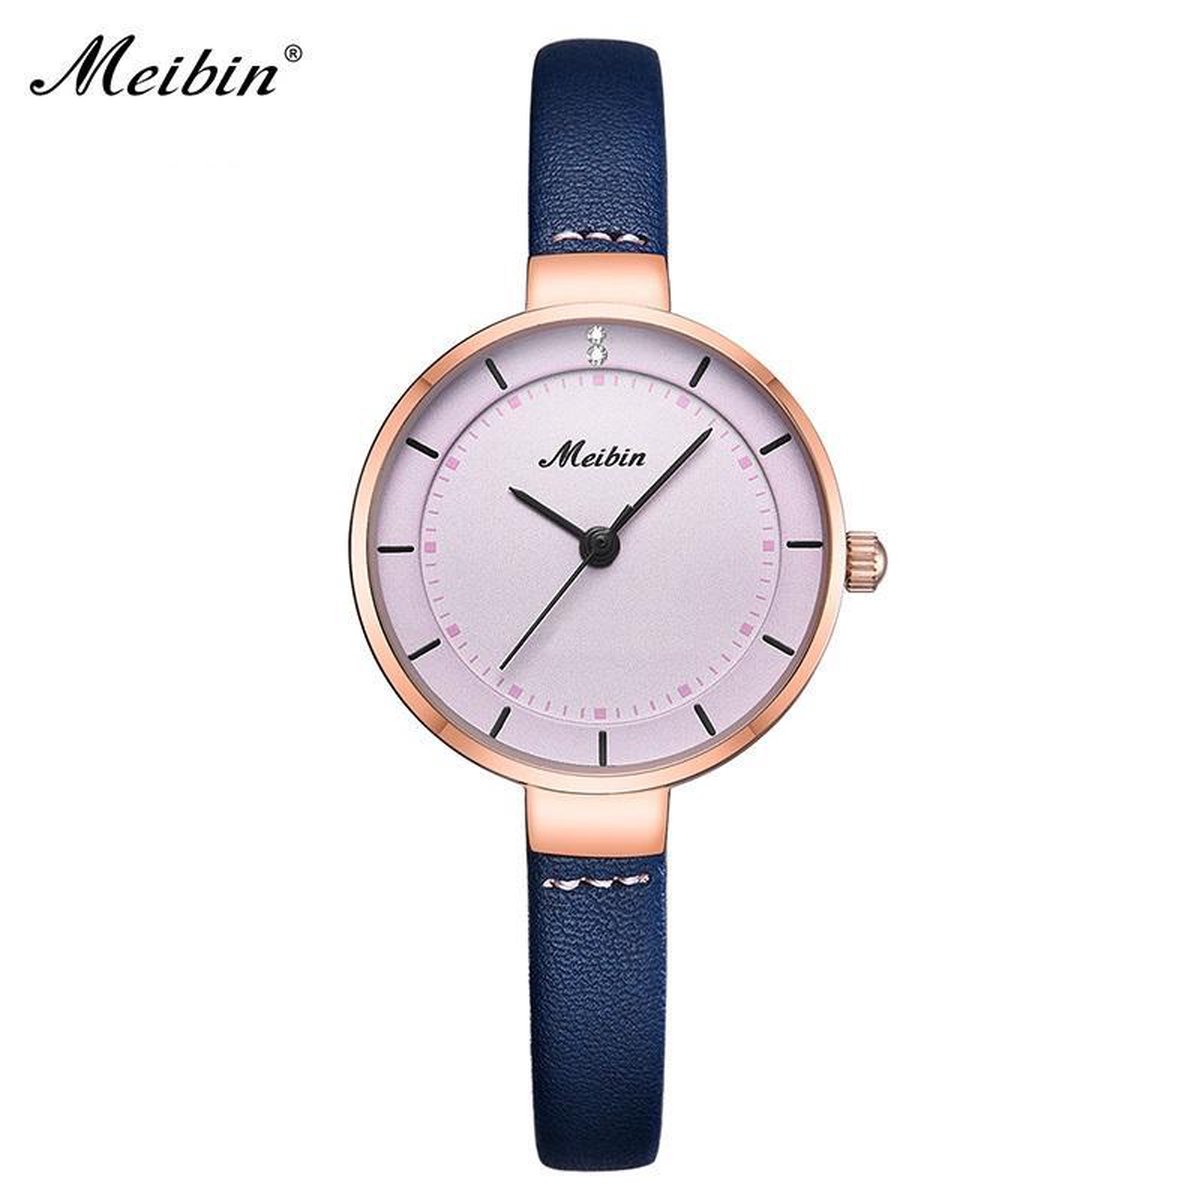 Longbo - Meibin - Dames Horloge - Blauw/Roze/Rosé - 28mm